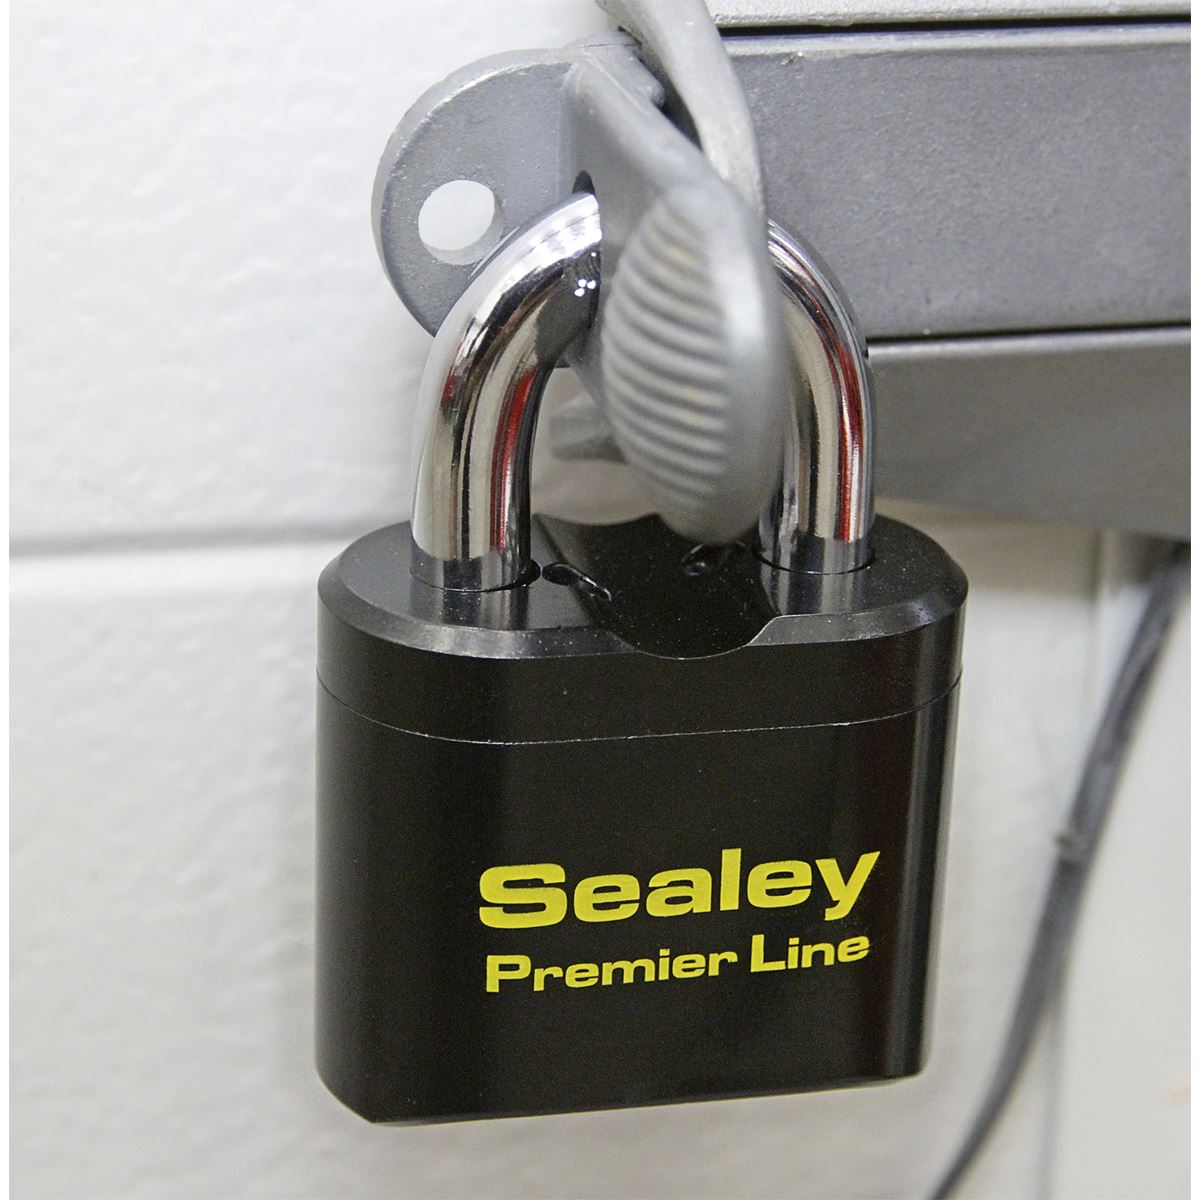 Sealey Premier Steel Body Combination Padlock 62mm